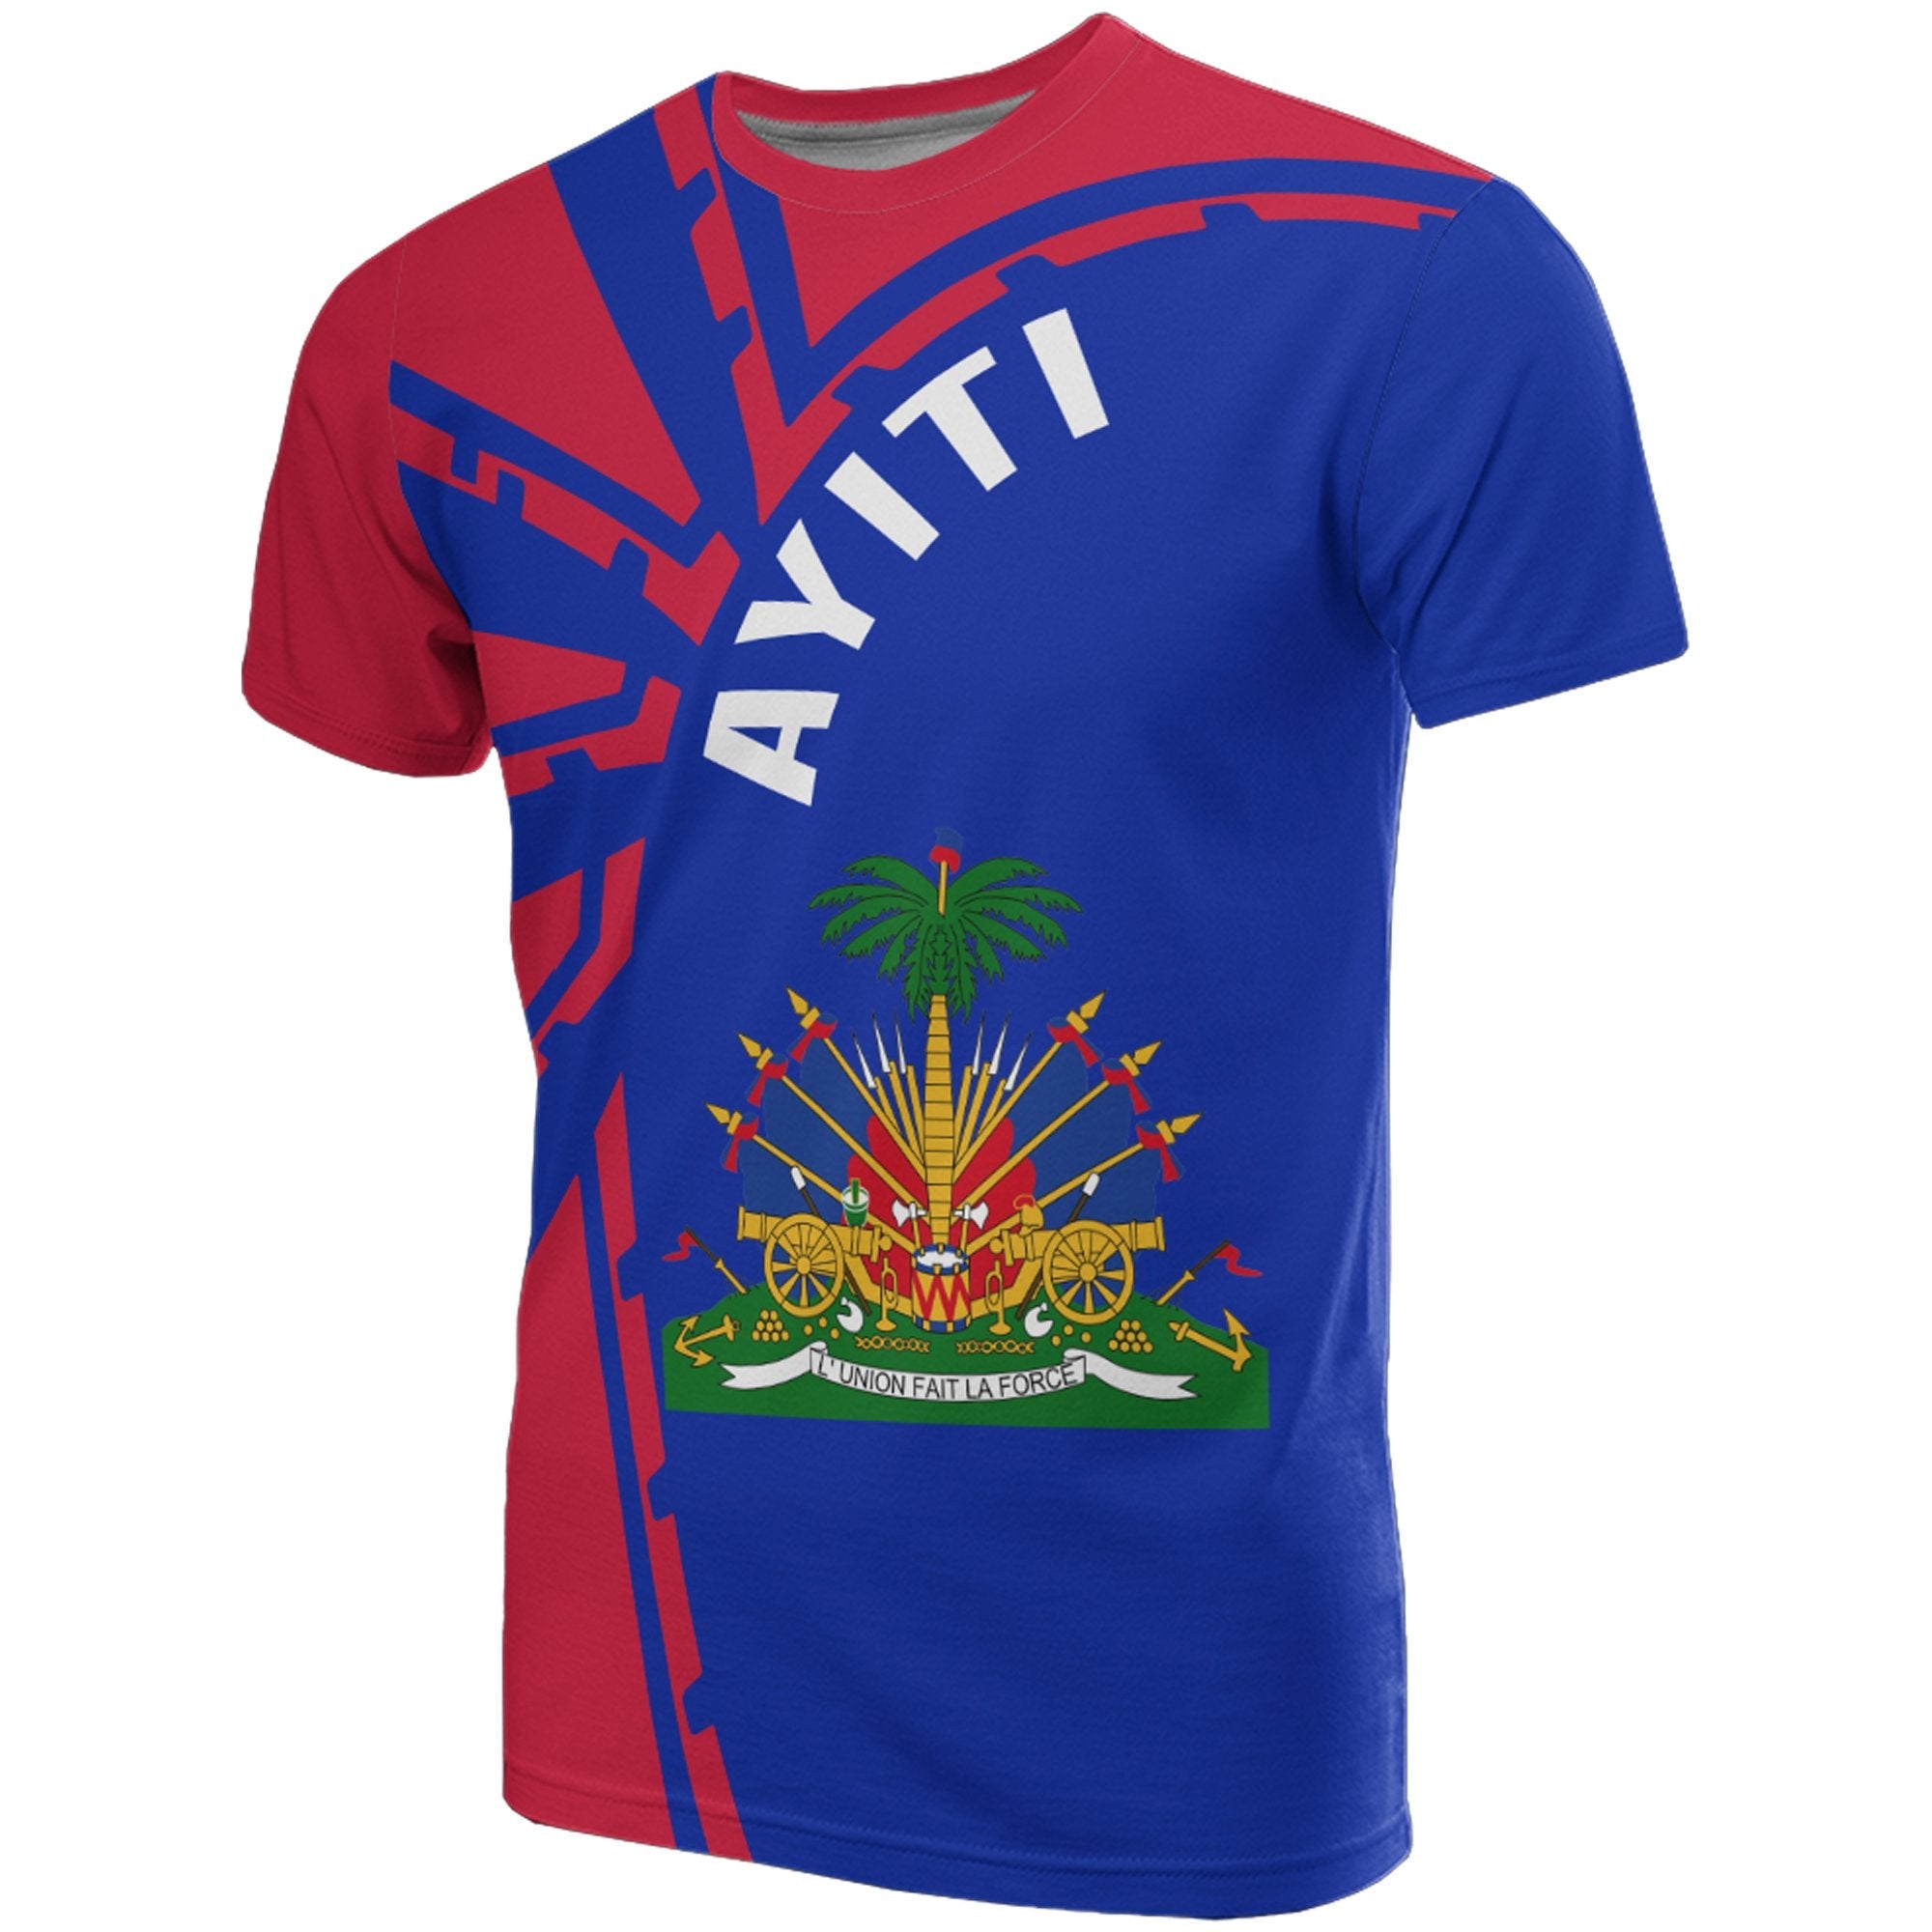 ayiti-haiti-t-shirt